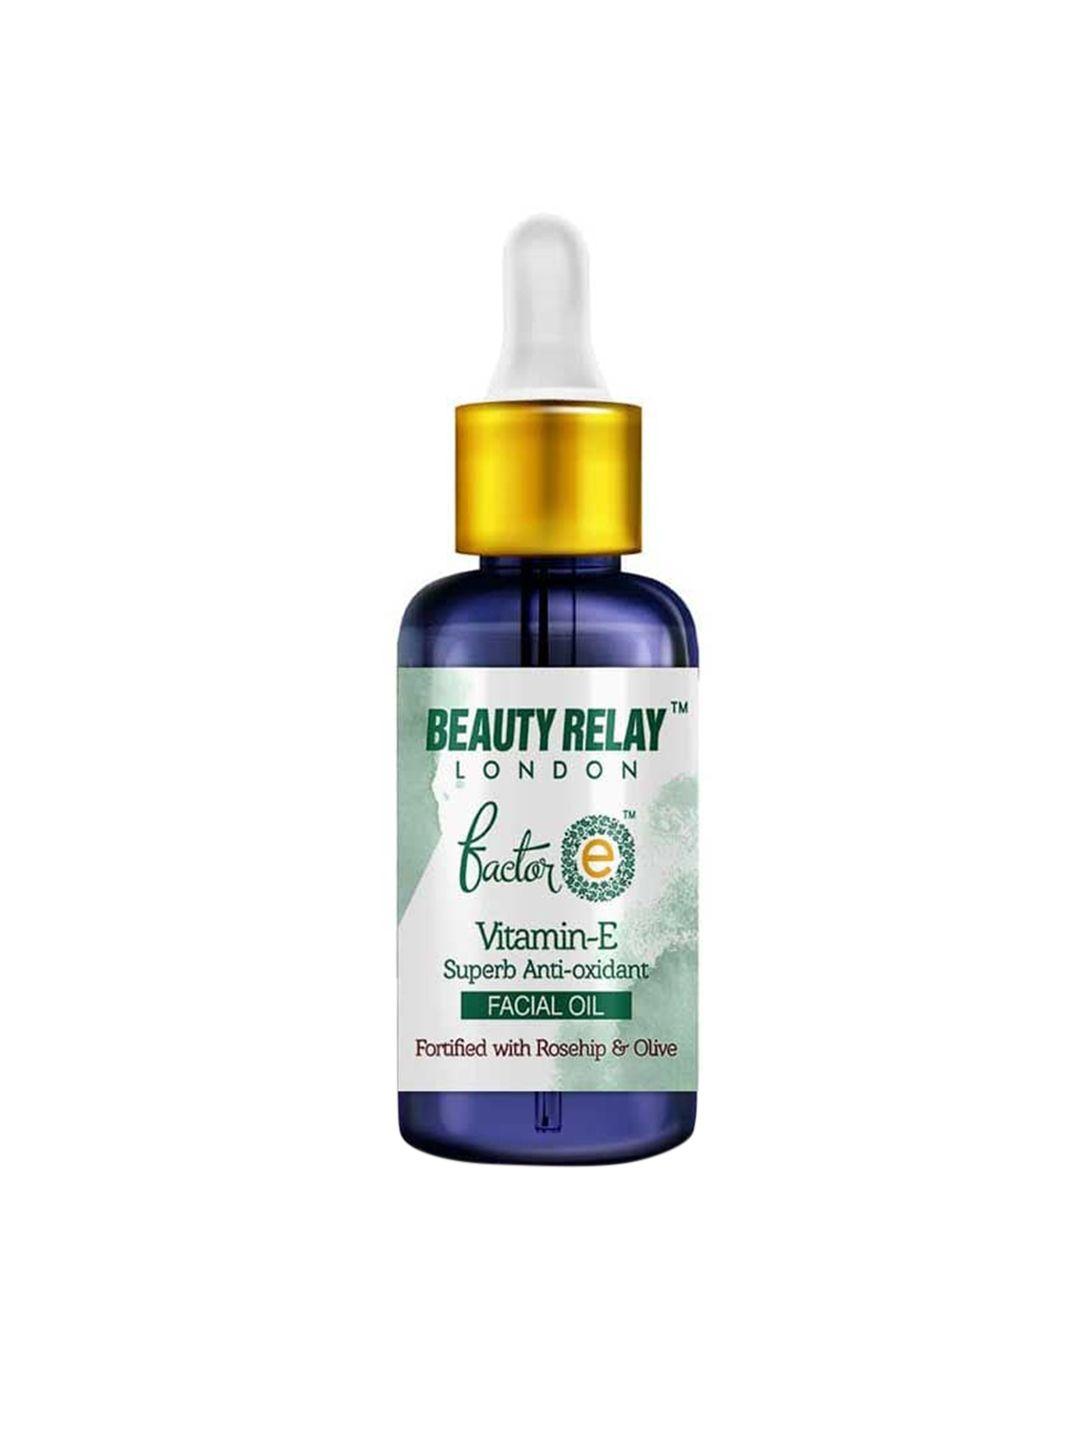 beautyrelay london factor e vitamin-e superb anti-oxidants facial oil with rosehip - 30 ml